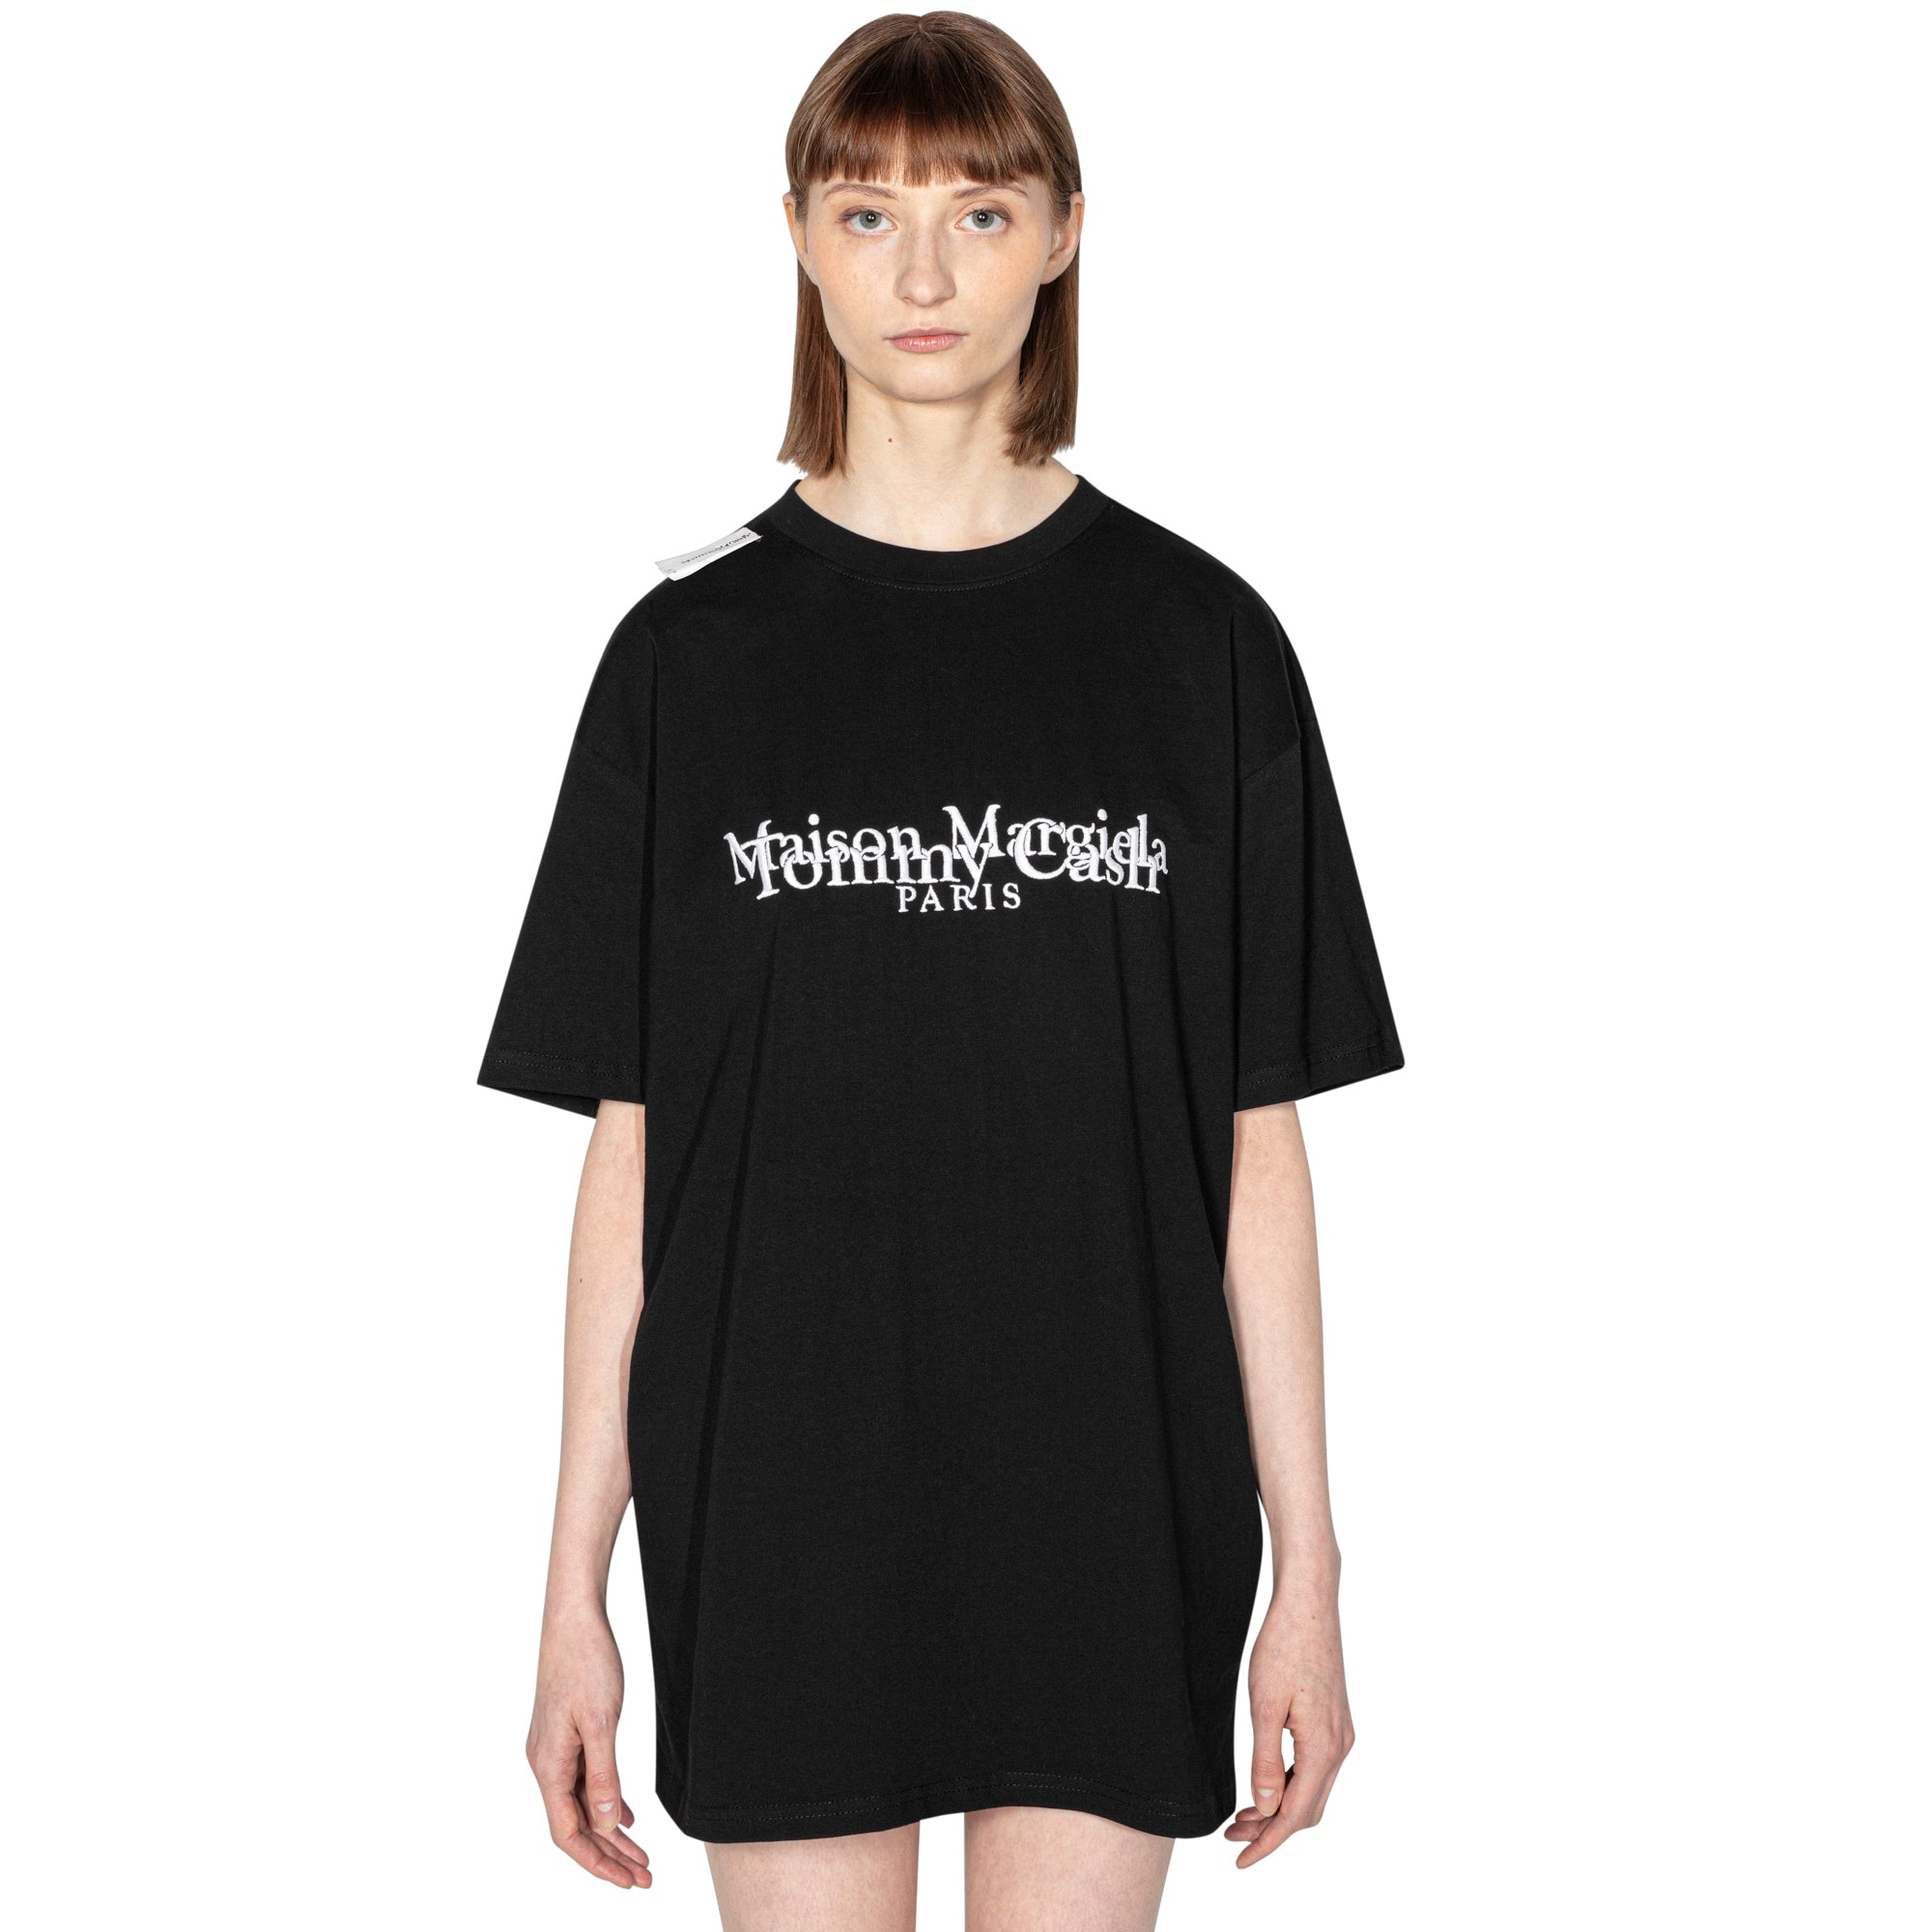 Maison Margiela x Tommy Cash T-shirt – TOMMY CASH SHOP